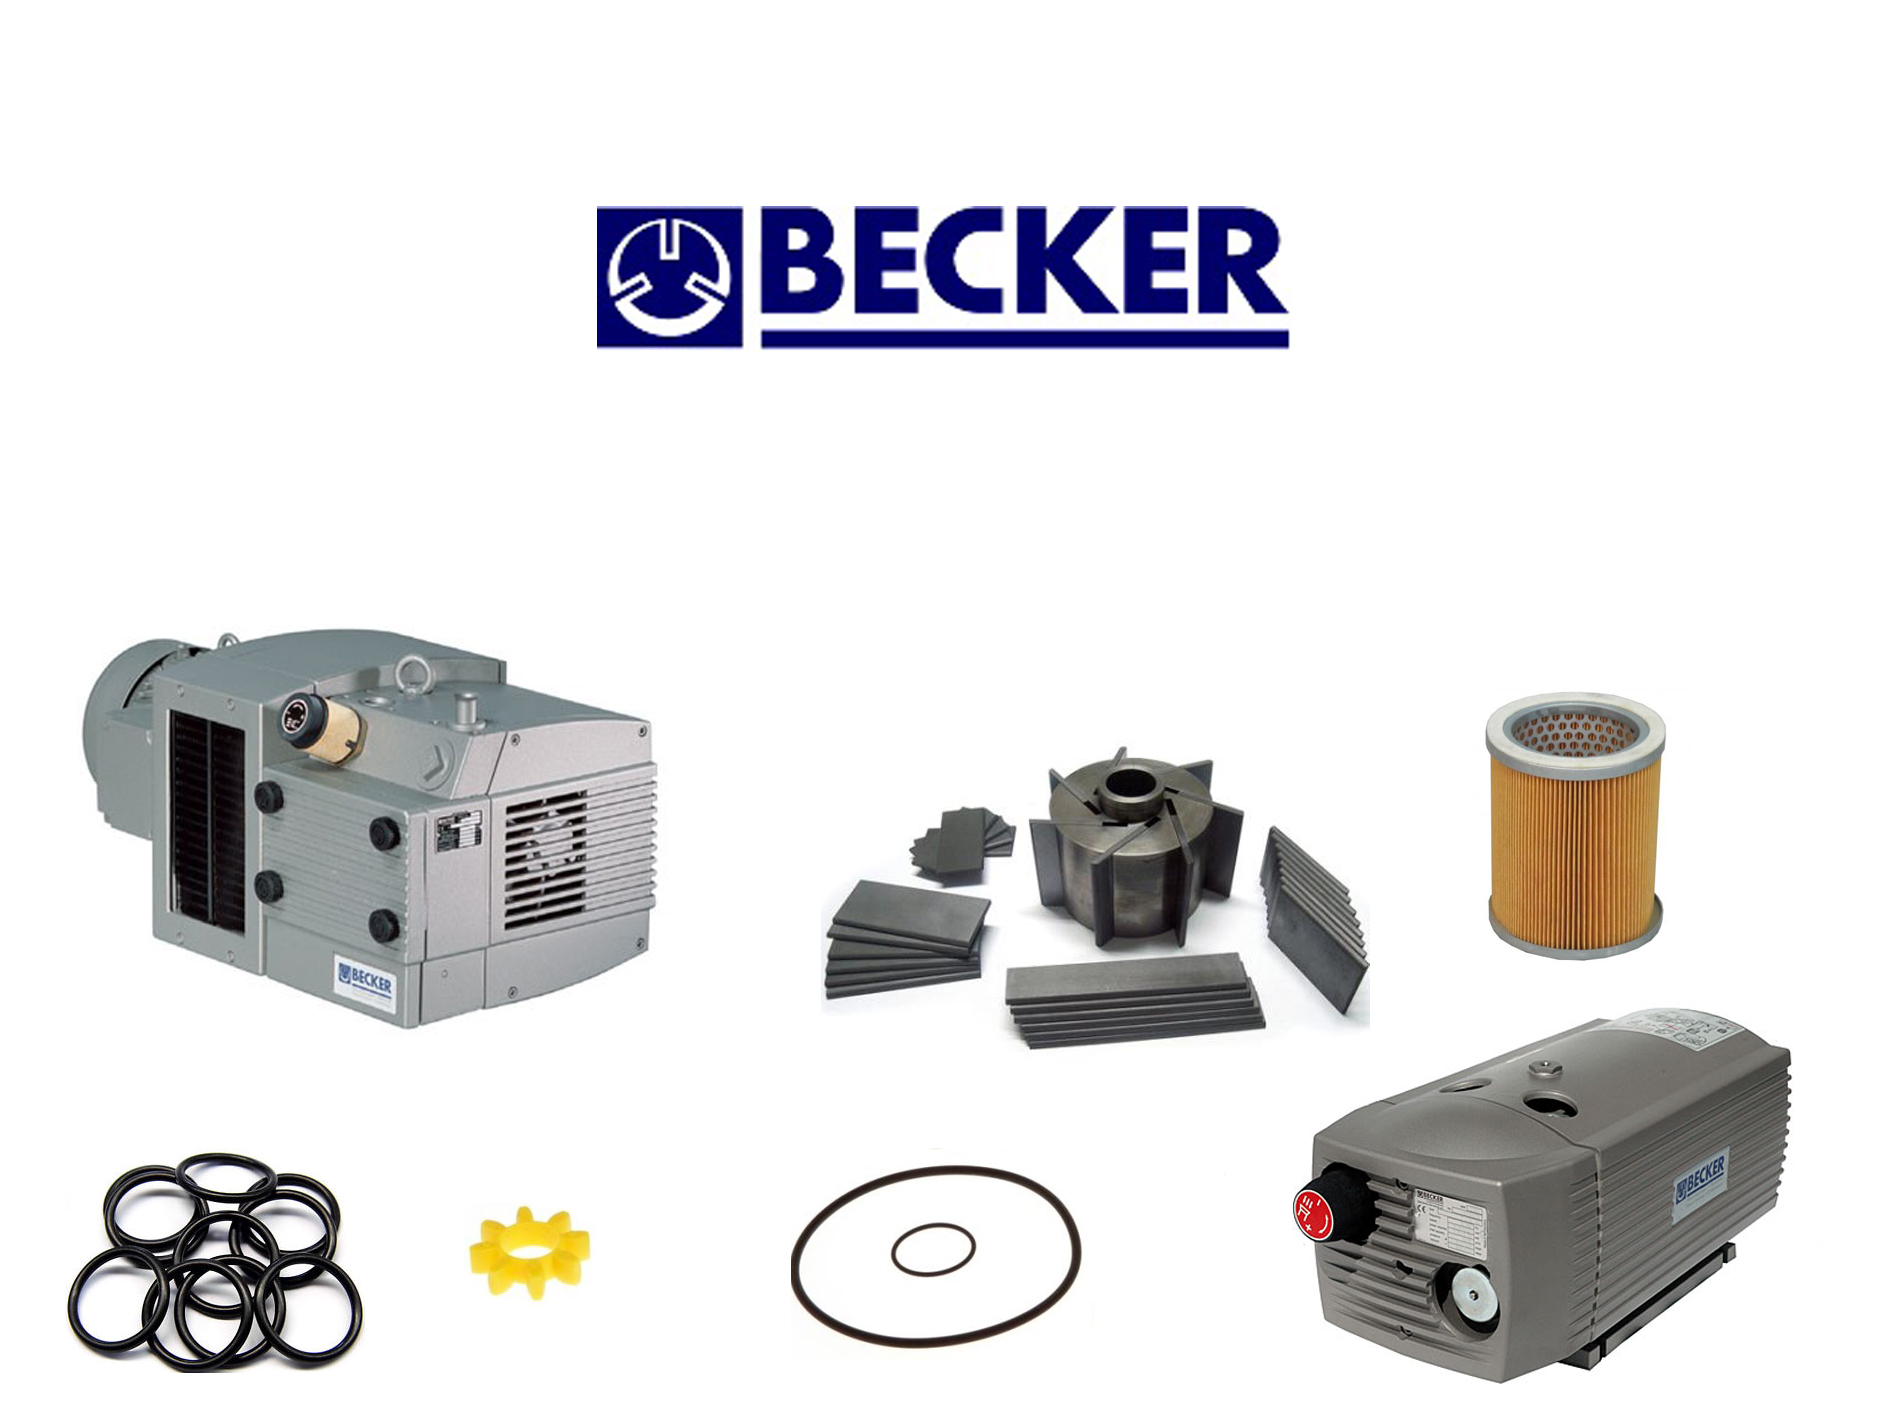 Becker-Vakuum-VT-Druschke-Vakum-Service-Spare-parts-.jpg